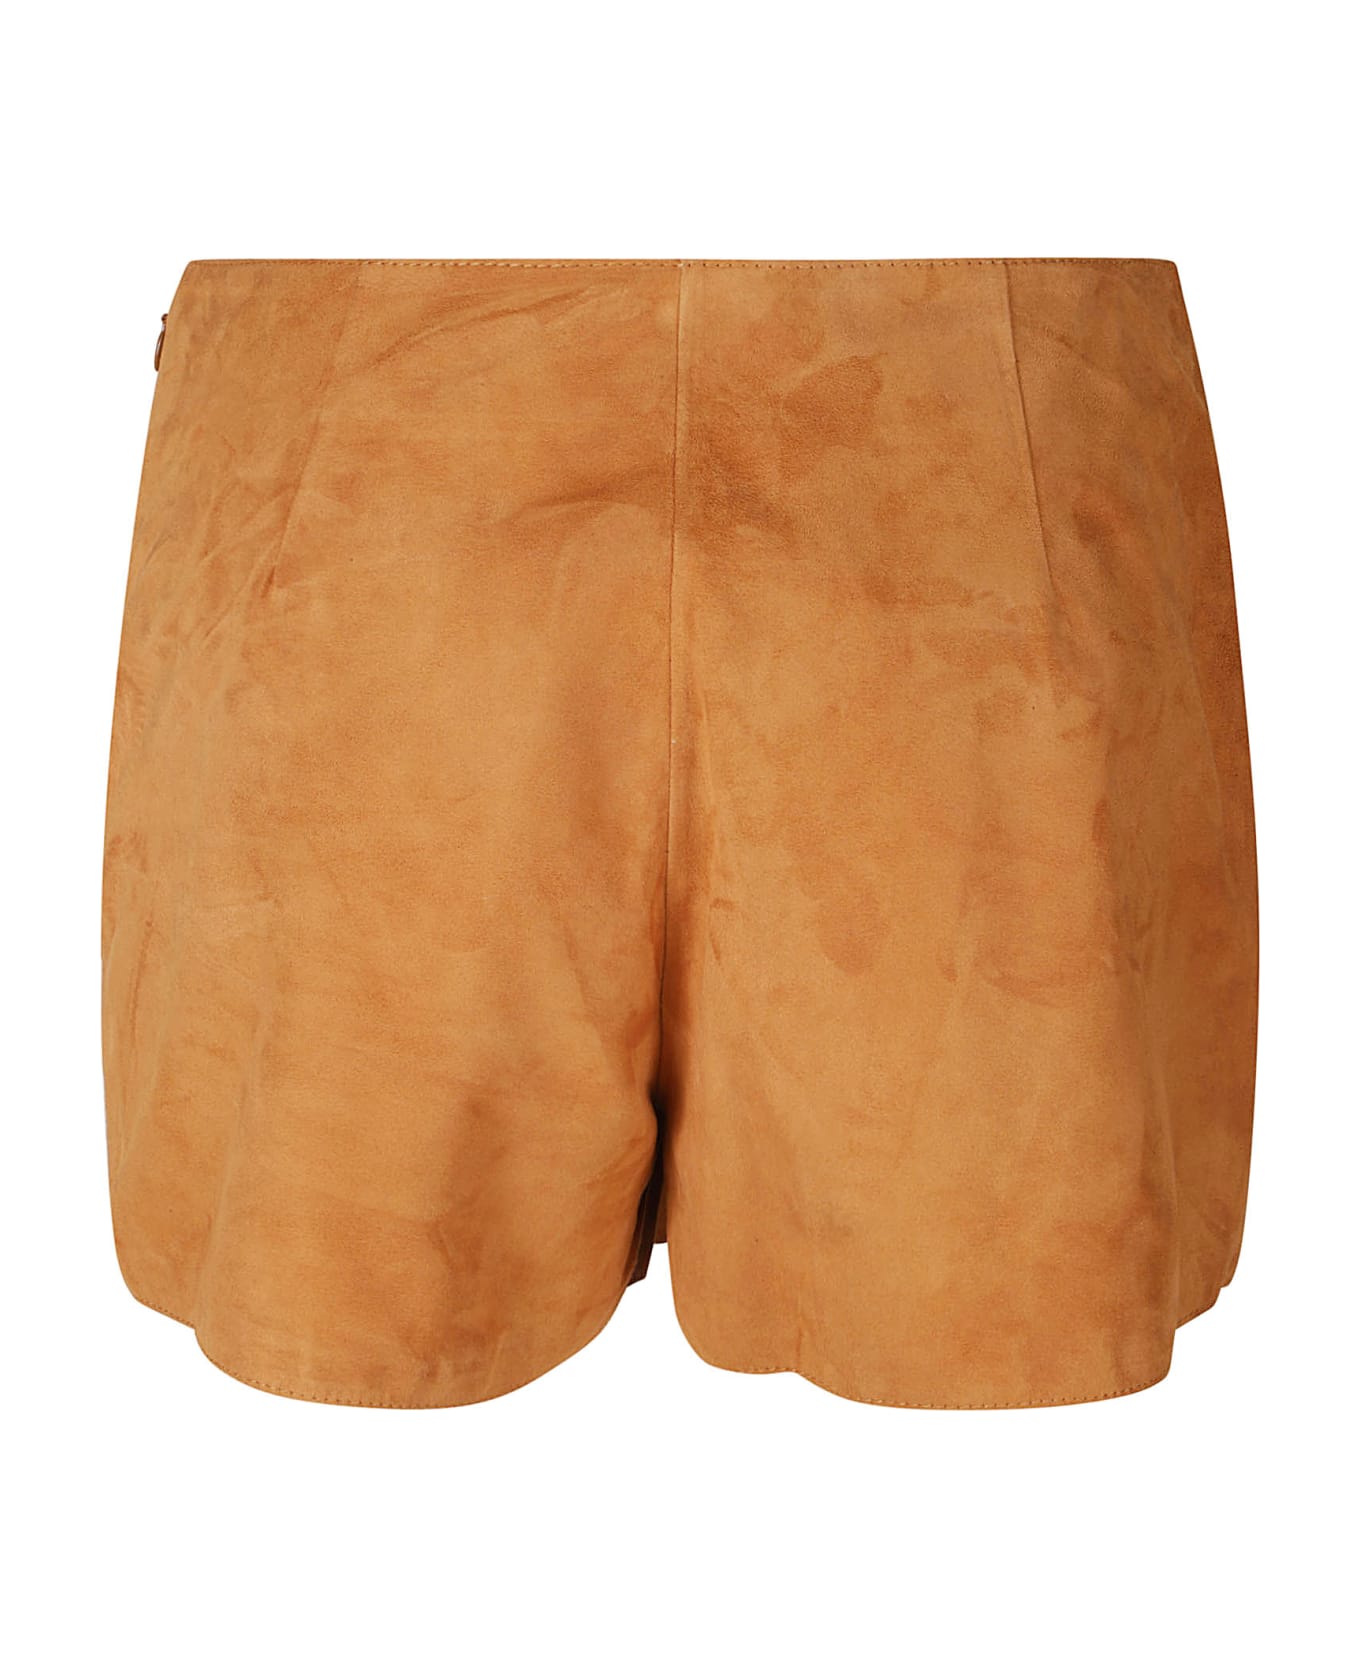 Ermanno Scervino Plain Velvet Shorts - Cuoio ショートパンツ